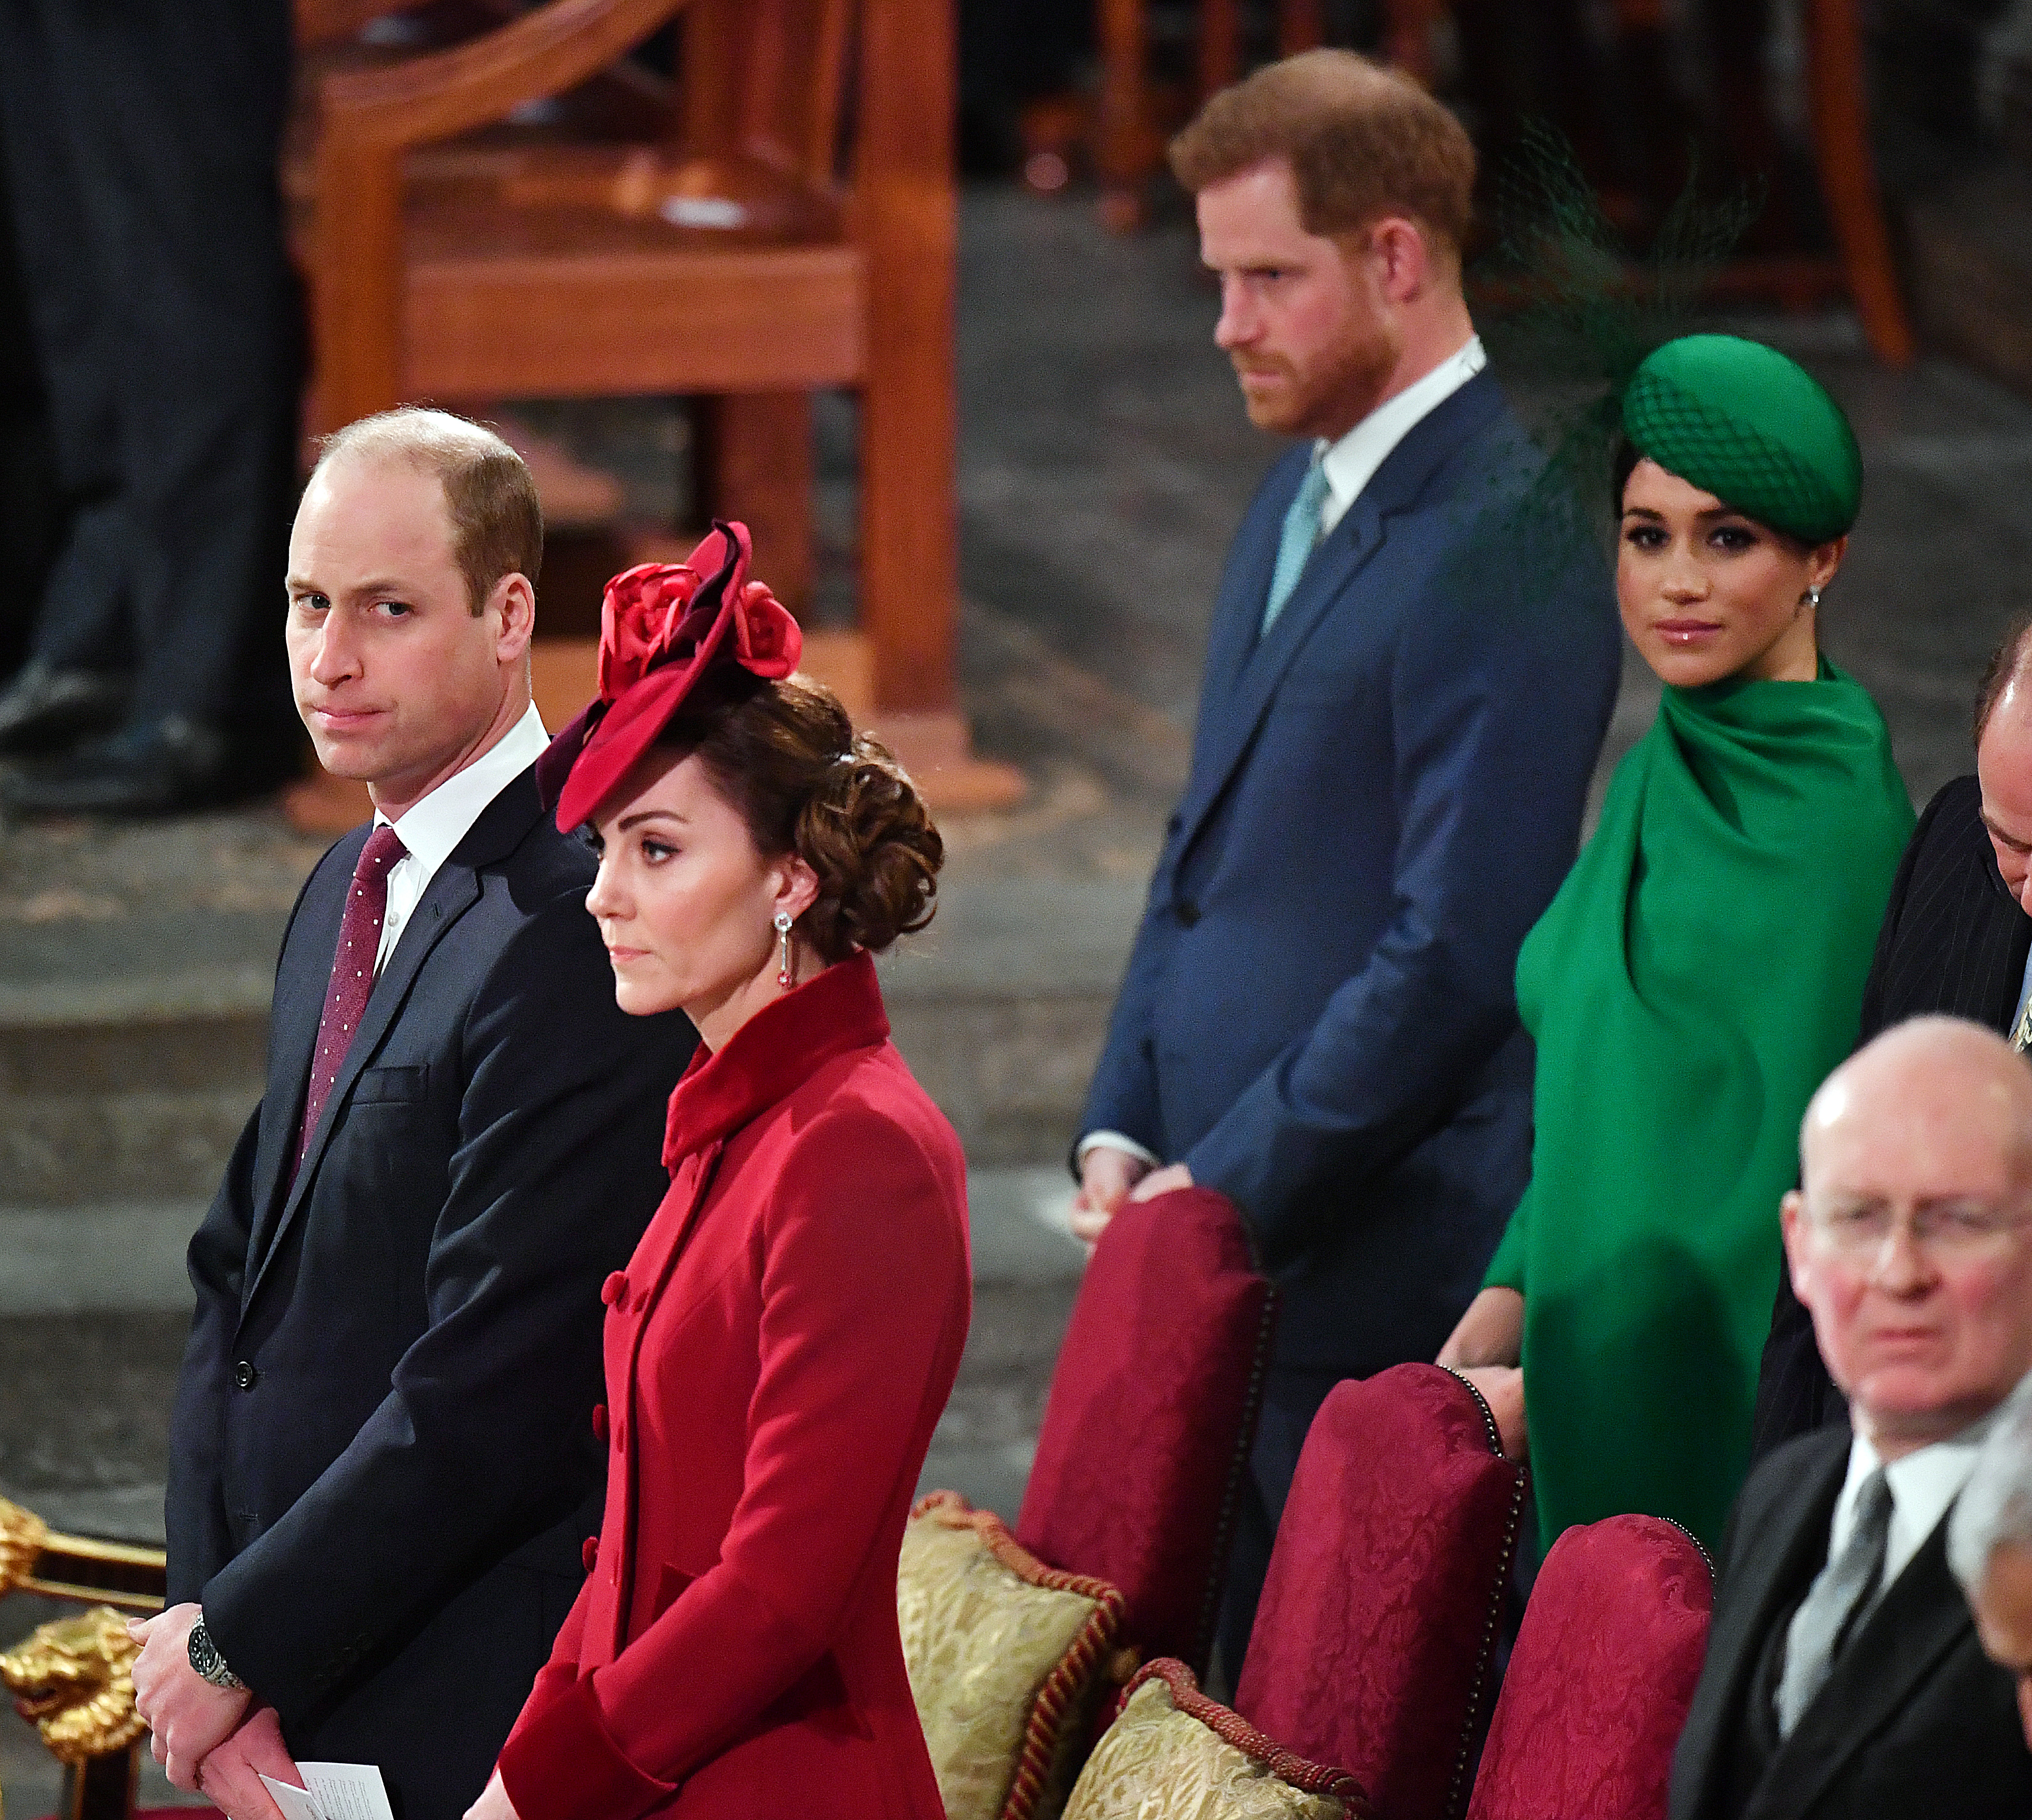 Prinz William, Prinzessin Catherine, Prinz Harry und Meghan Markle während des Commonwealth Day Service 2020 am 9. März 2020 in London, England | Quelle: Getty Images